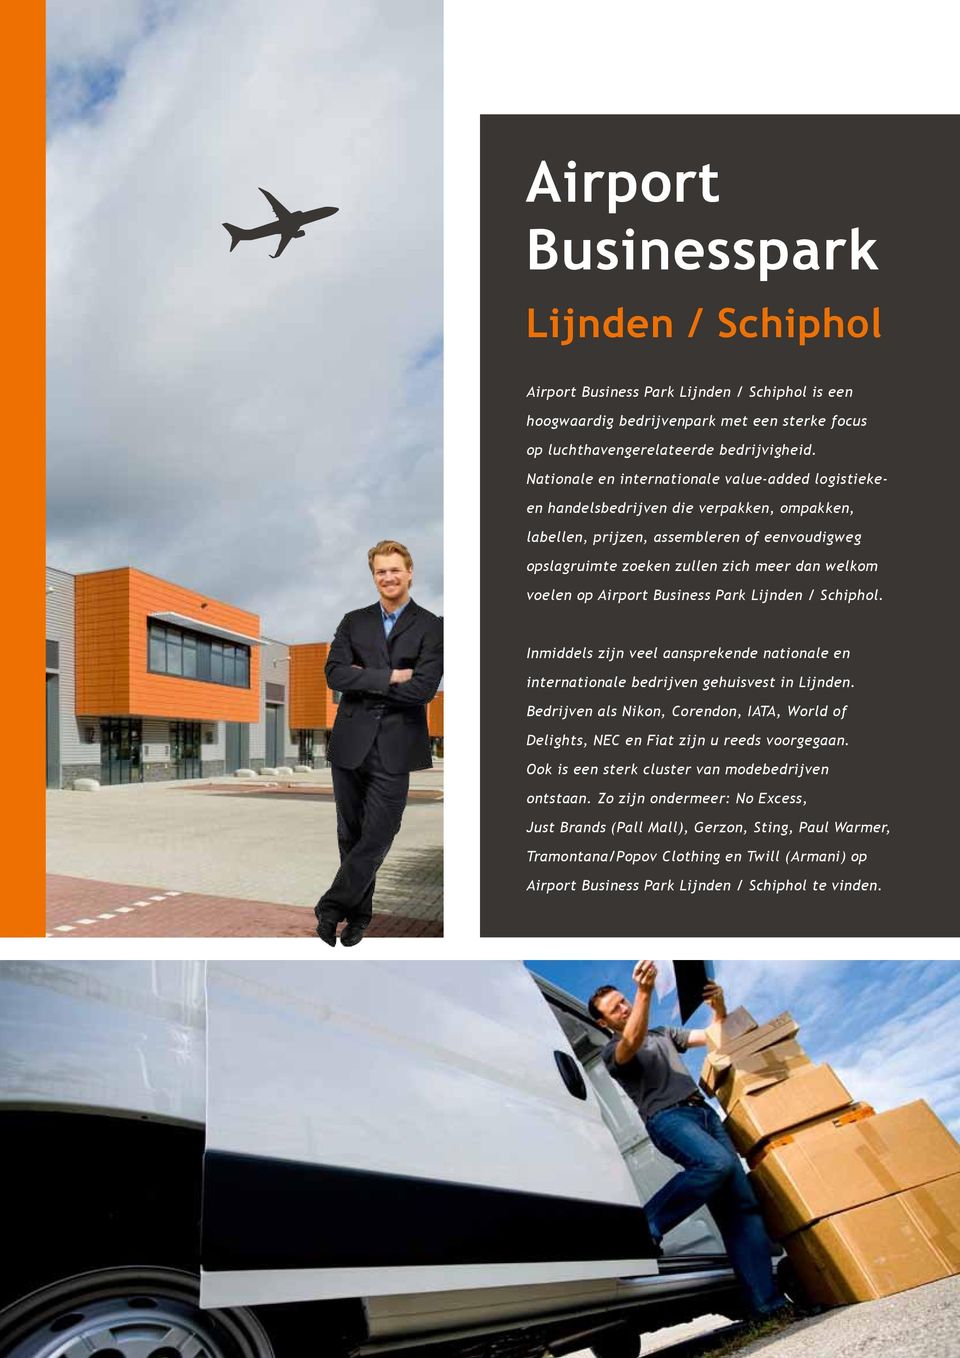 Airport Business Park Lijnden / Schiphol. Inmiddels zijn veel aansprekende nationale en internationale bedrijven gehuisvest in Lijnden.